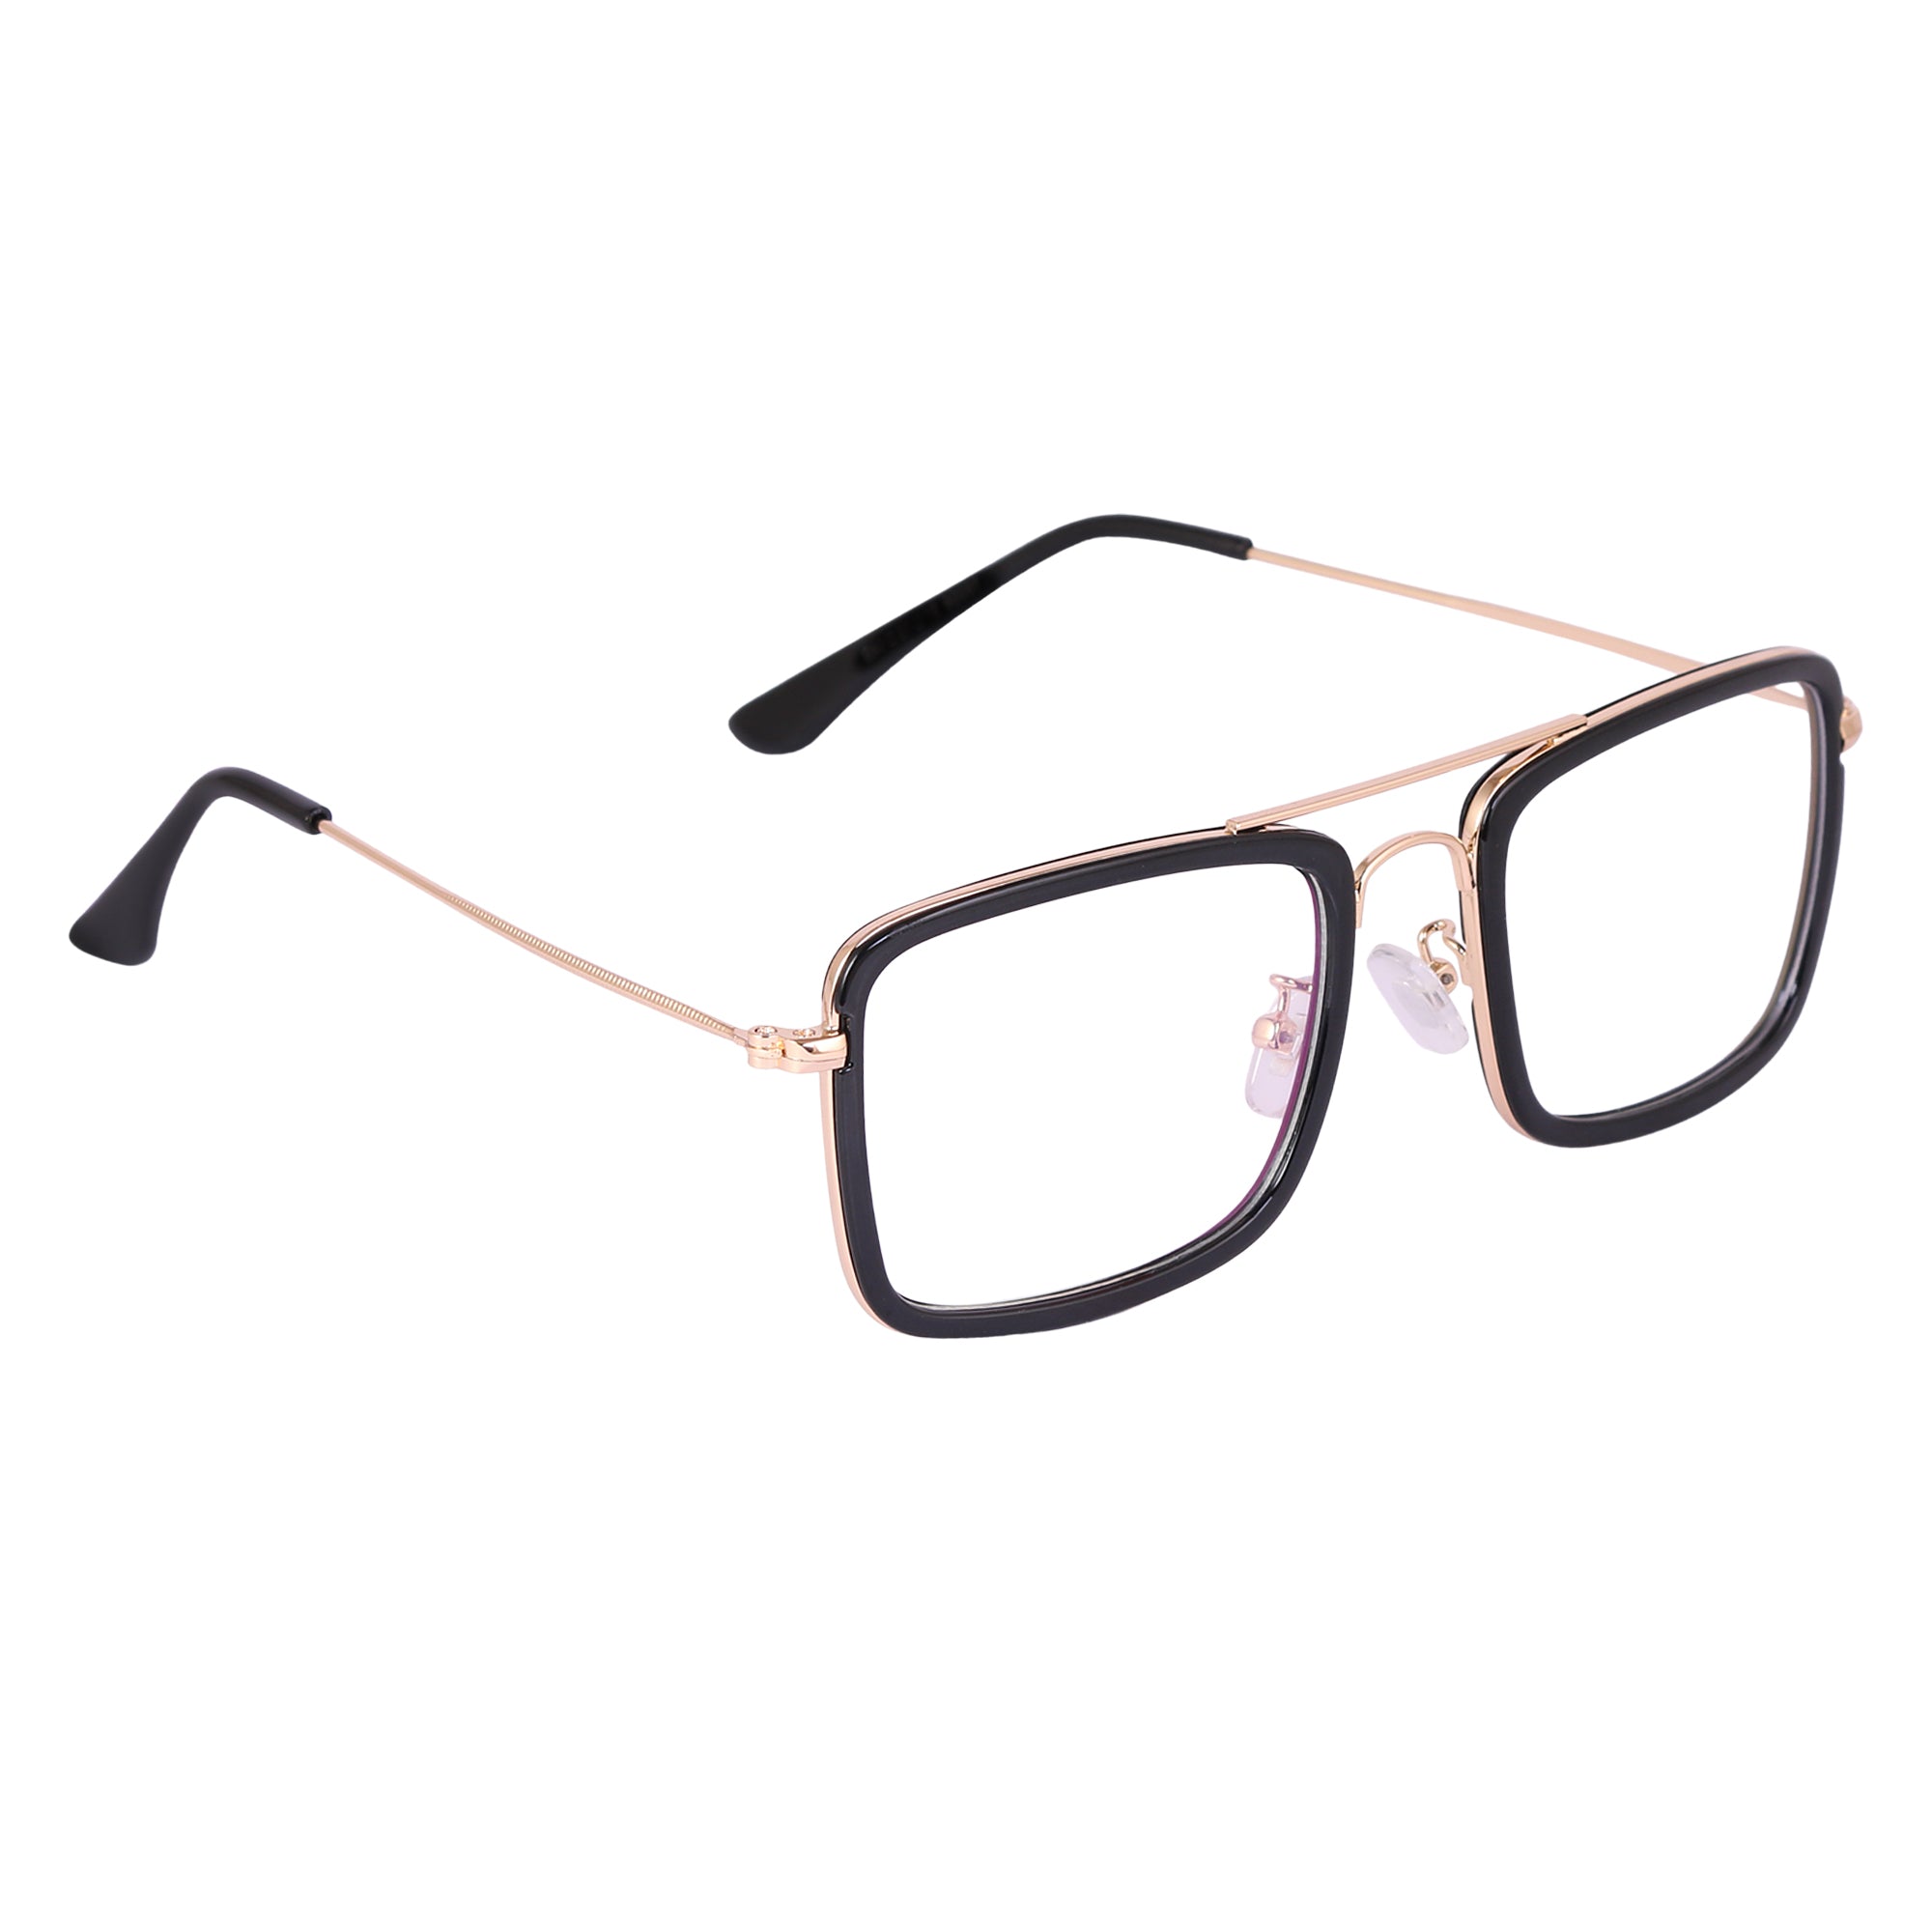 BLACK GOLD Square Rimmed Eyeglasses -16006